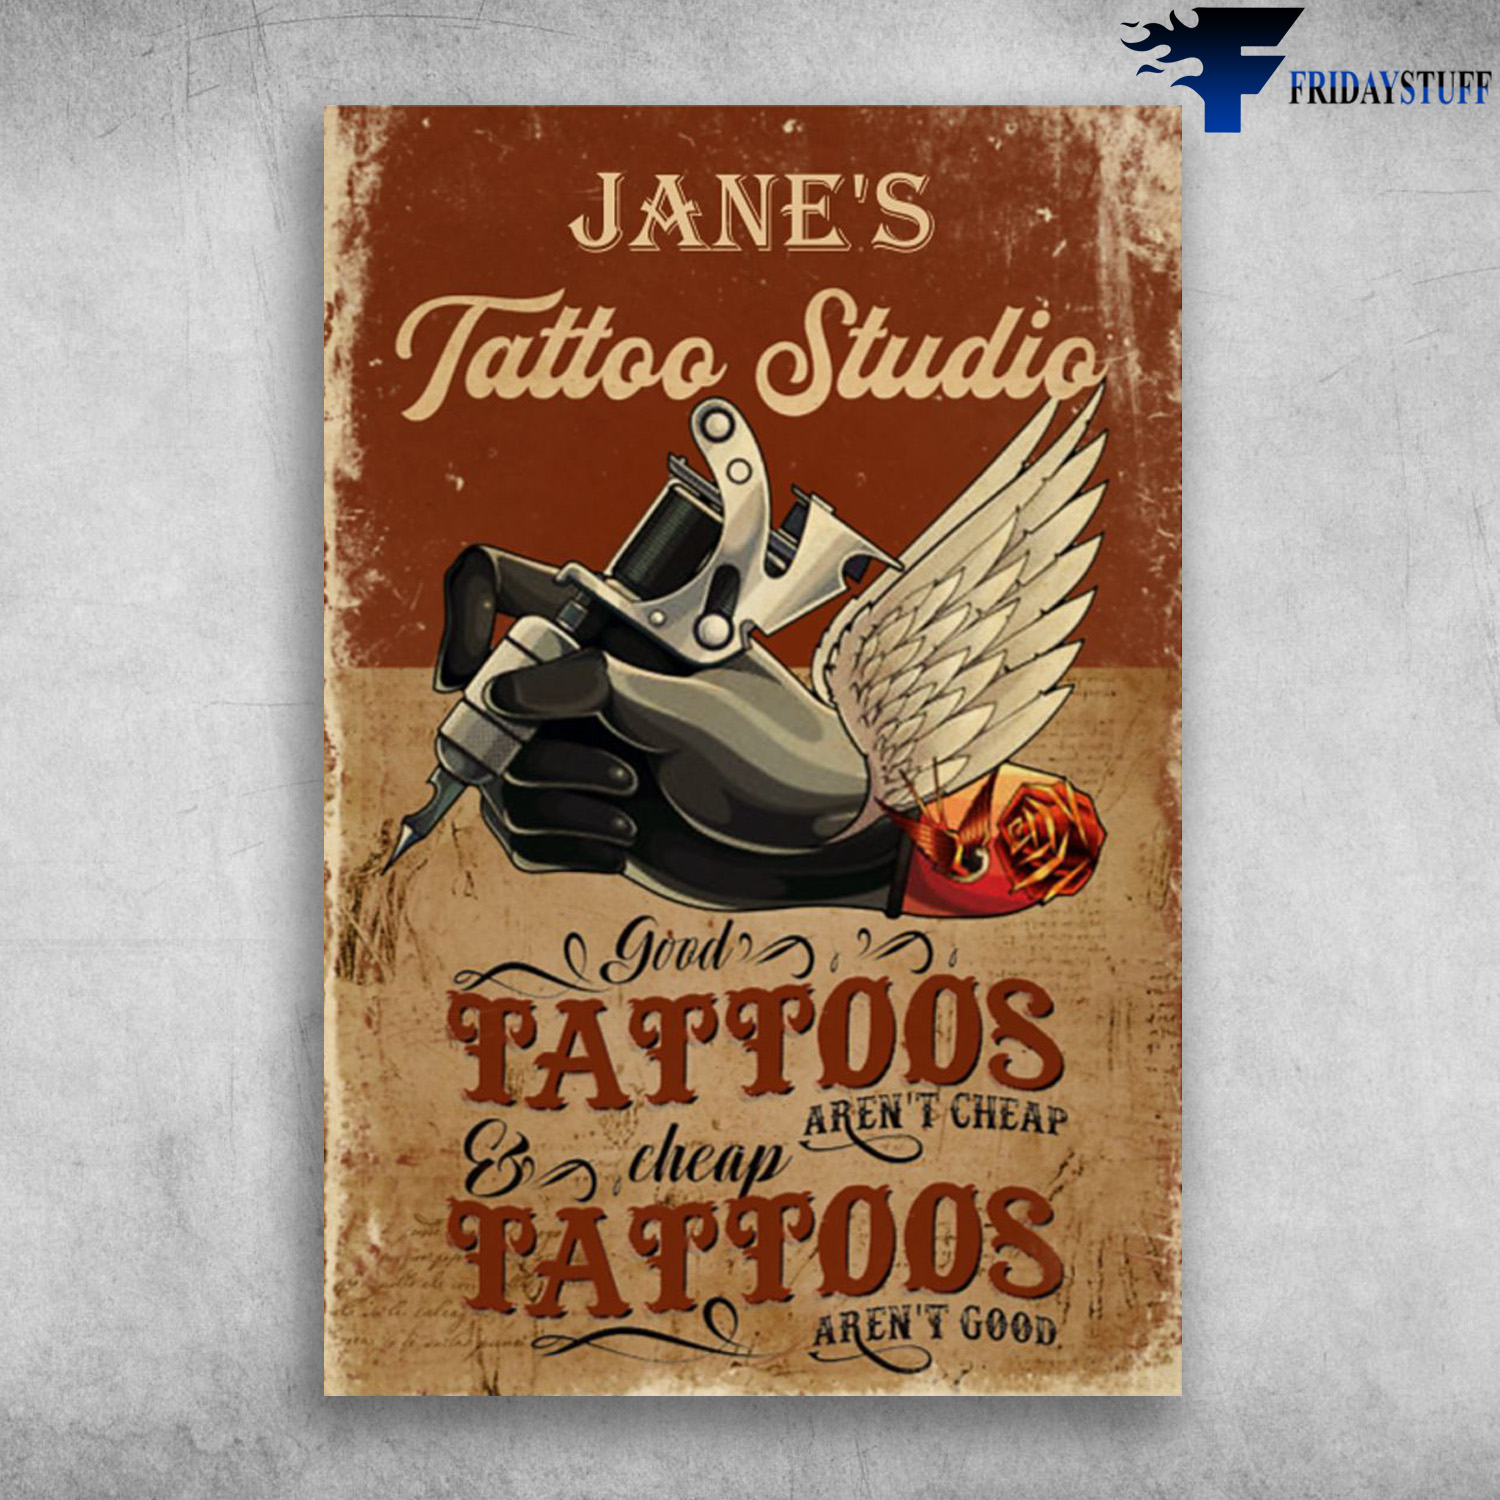 Thời đại hiện nay, tattoo không còn là điều gì xa lạ và các studio tattoo ngày càng phổ biến. Đến với studio của chúng tôi, bạn sẽ được trải nghiệm thế giới chìm đắm trong nghệ thuật thẩm mỹ, tận hưởng không gian sáng tạo và chuyên nghiệp cùng đội ngũ artist tài năng.